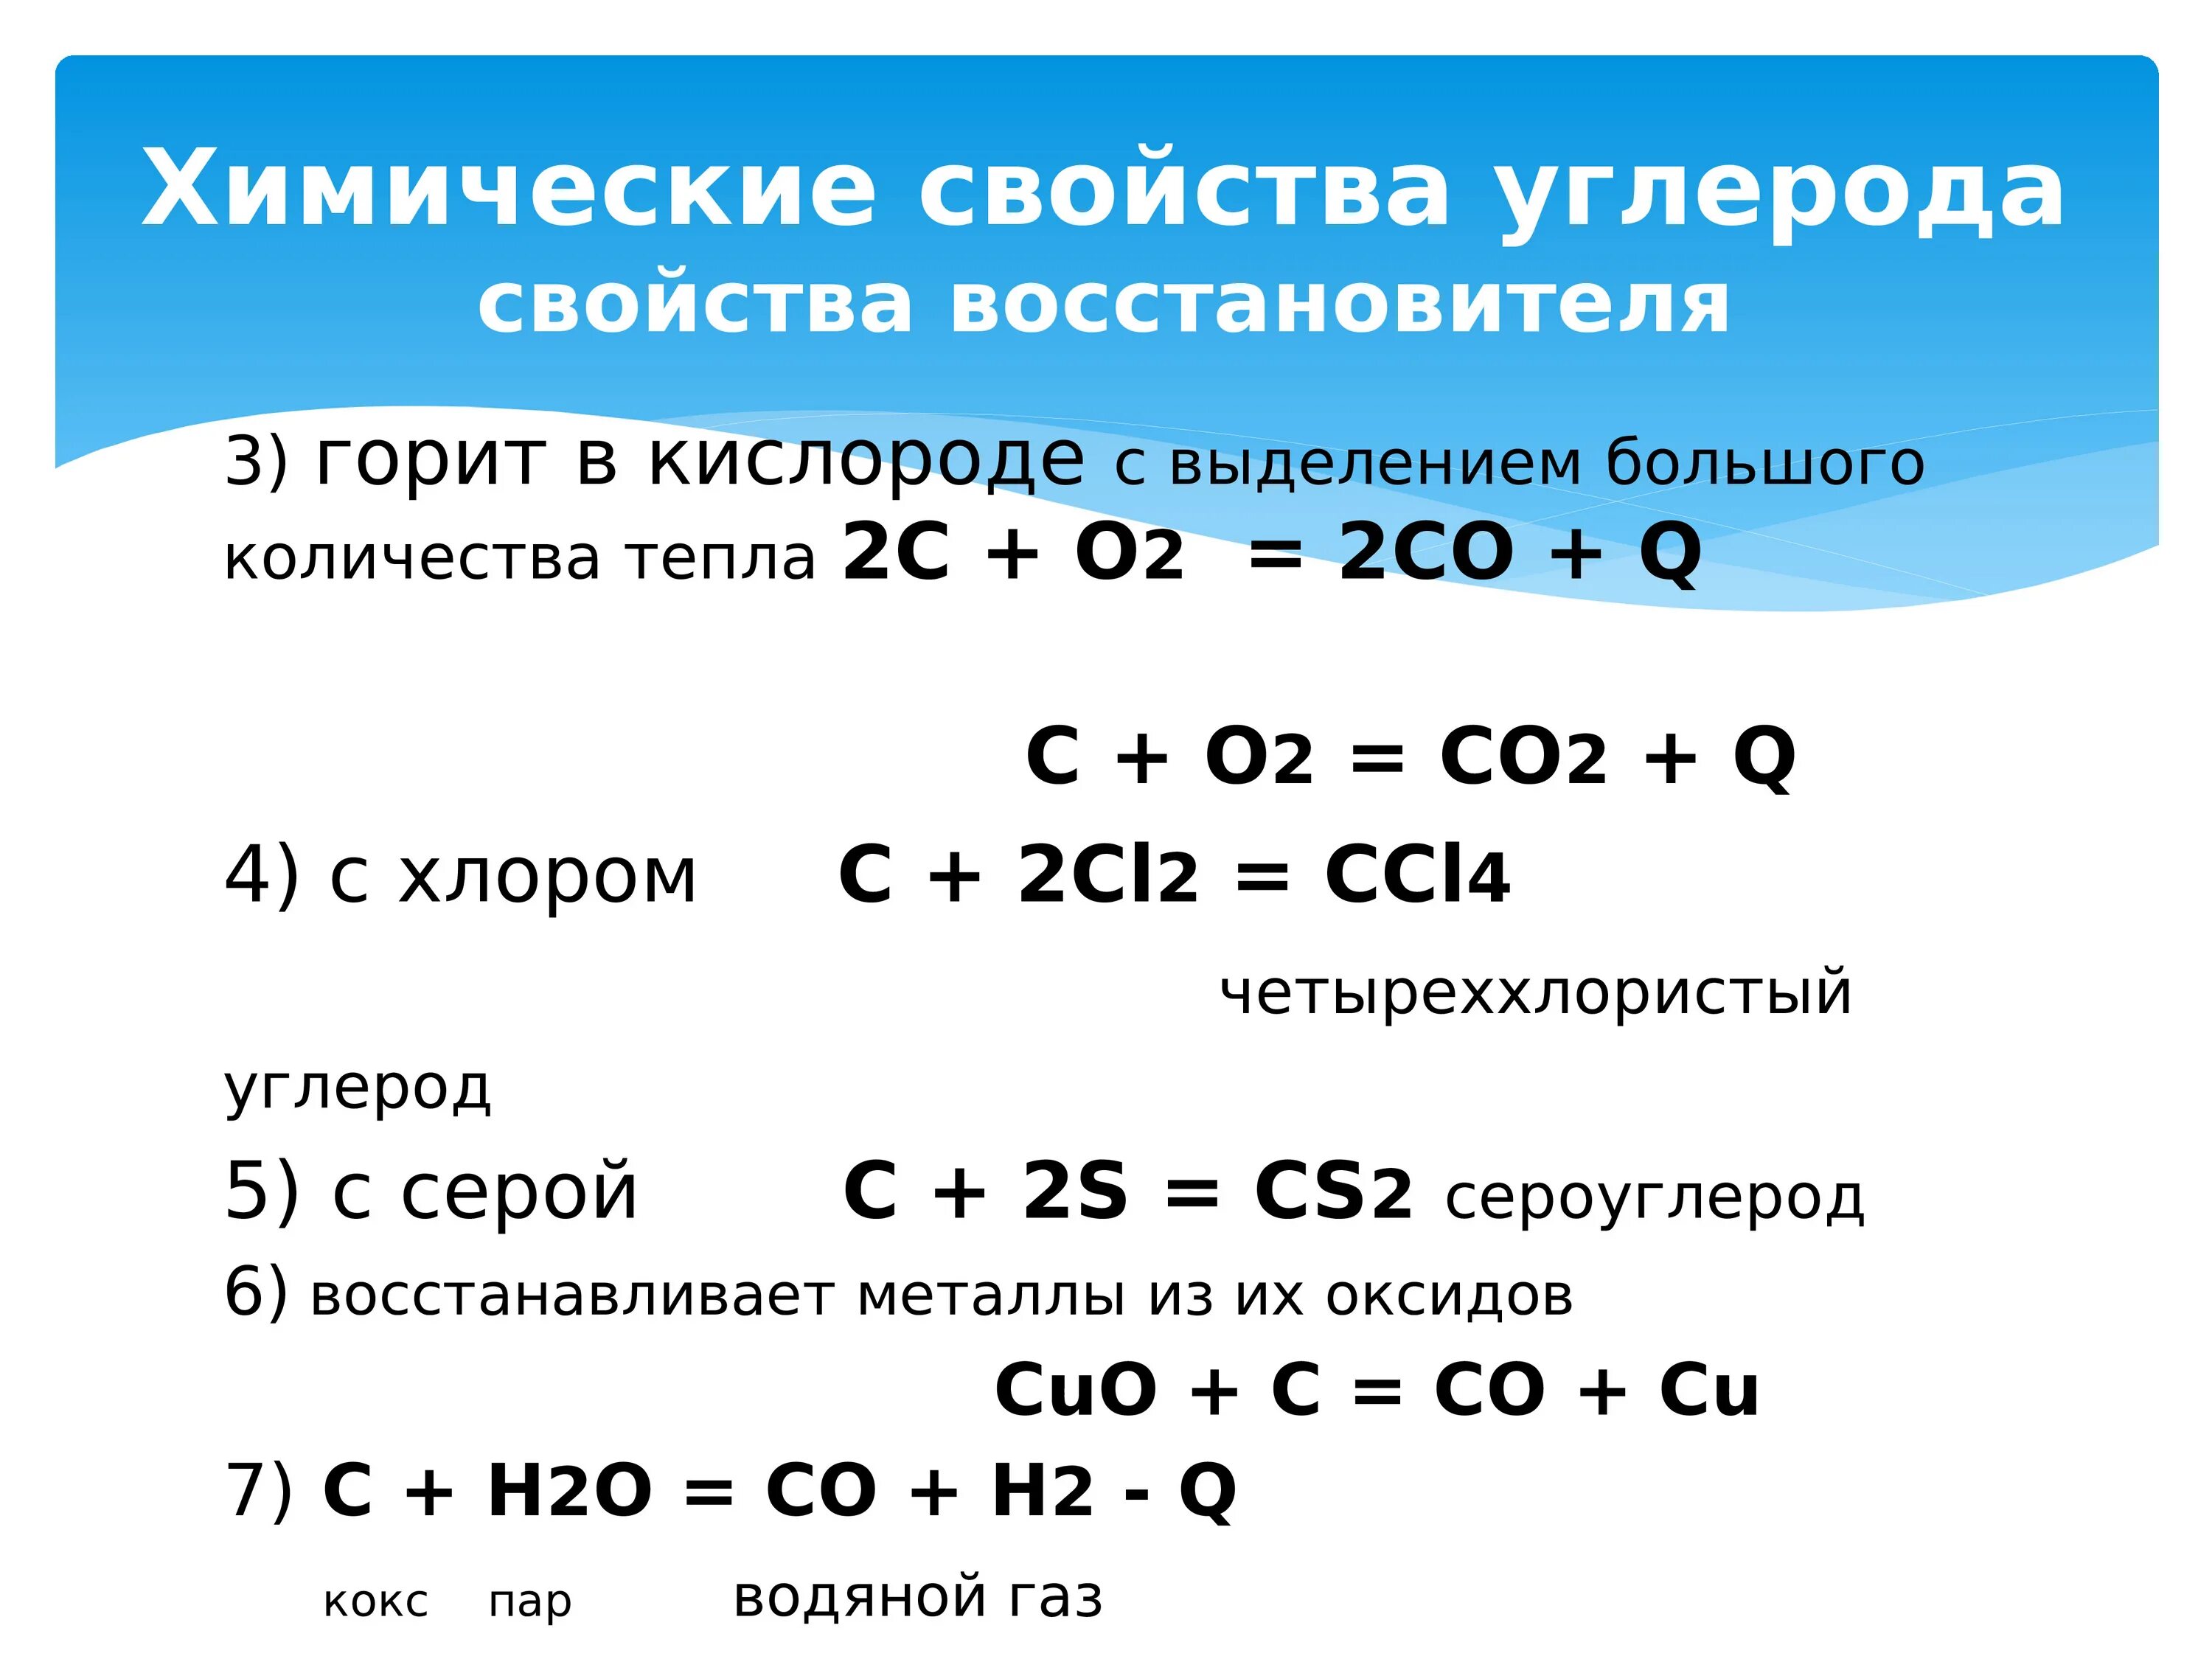 Характерные соединения углерода. Химические свойства углерода реакции. Химические свойства углерода таблица. Химические свойства углерода уравнения. Углерод соединения углерода.